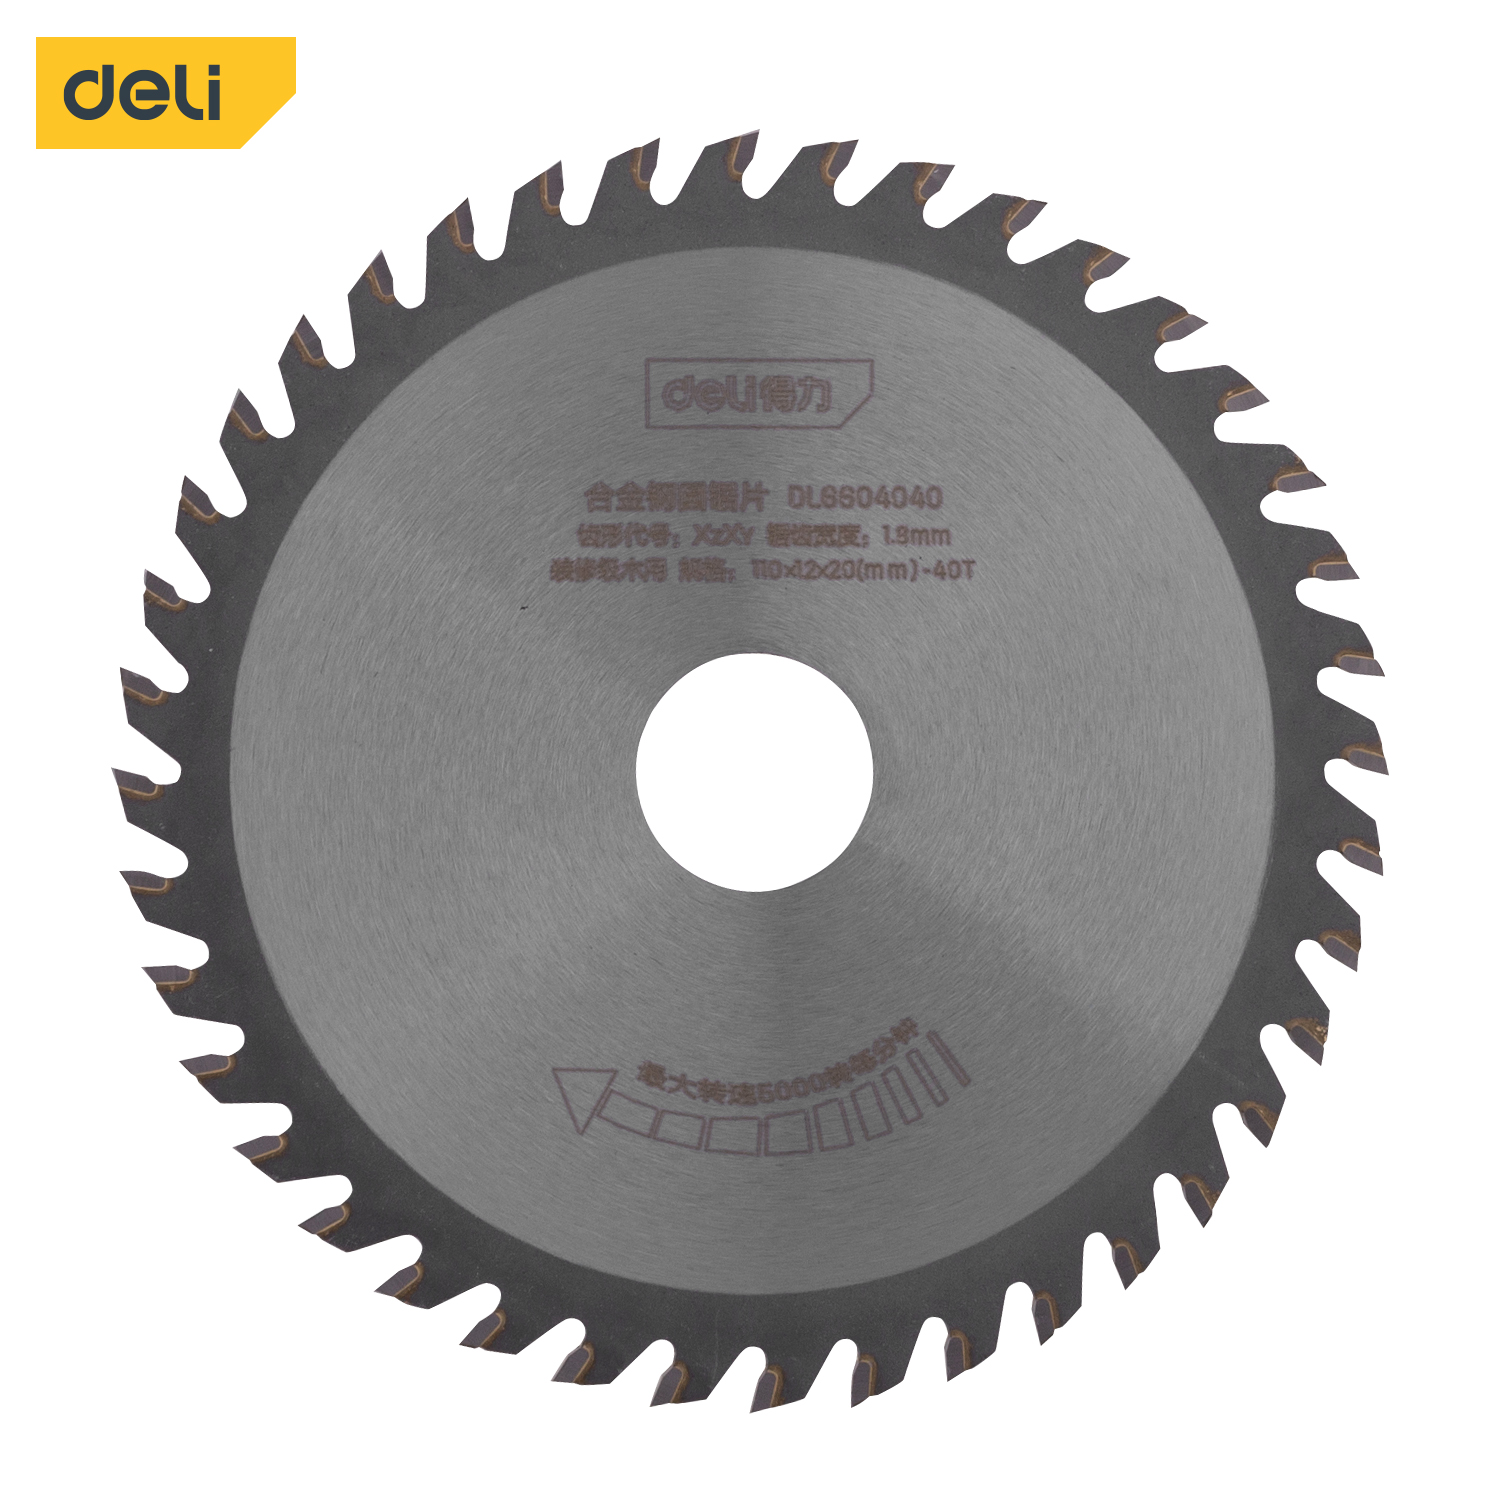 Deli-DL6604040 Alloy Steel Circular Saw Blade